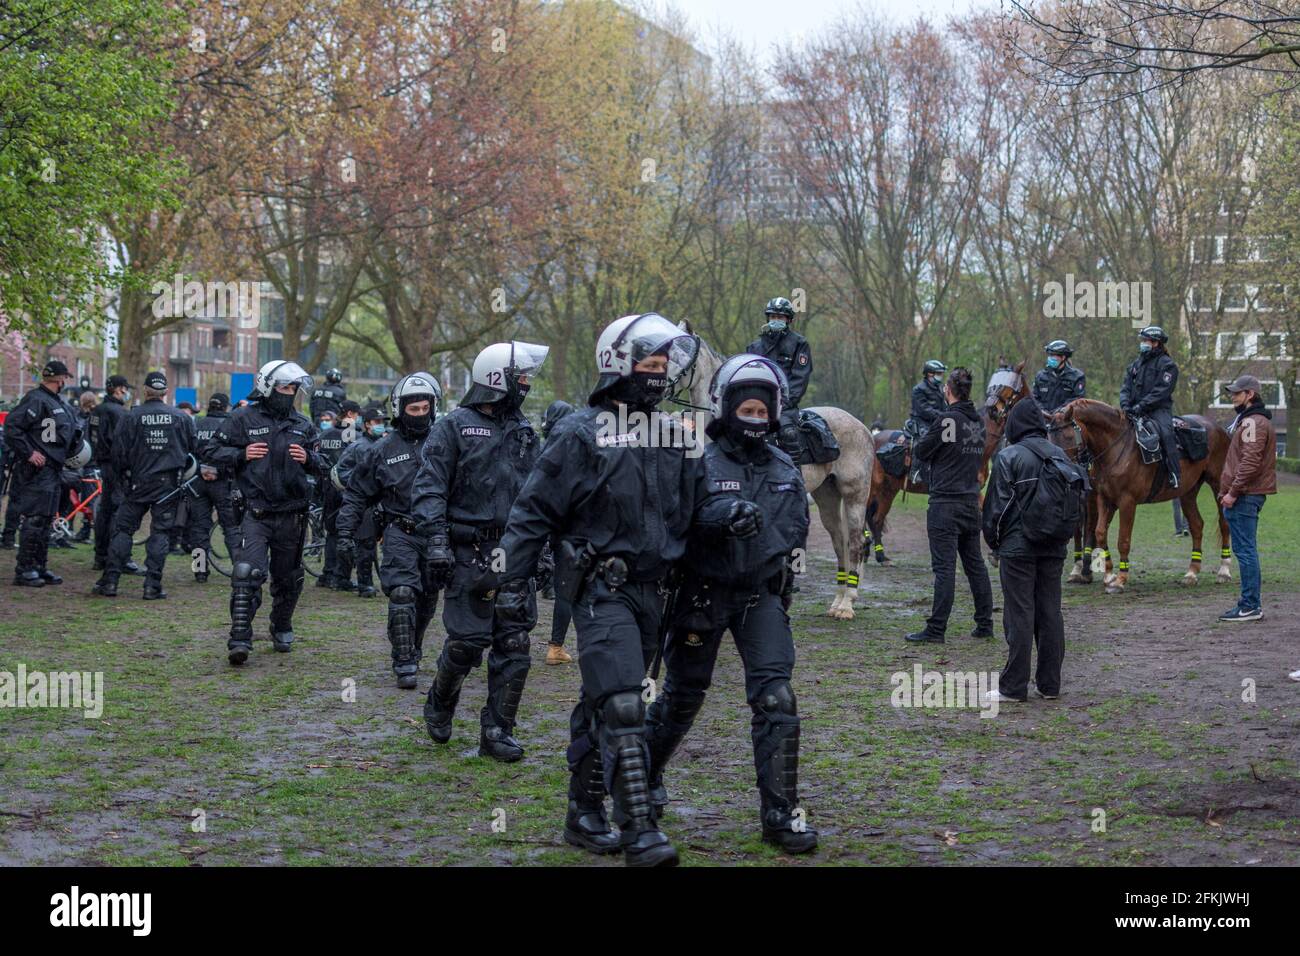 Hambourg, Allemagne - 1er mai 2021 : police anti-émeute allemande sur le côté d'une manifestation avec casques pendant. Les manifestants et l'équipe de police Banque D'Images